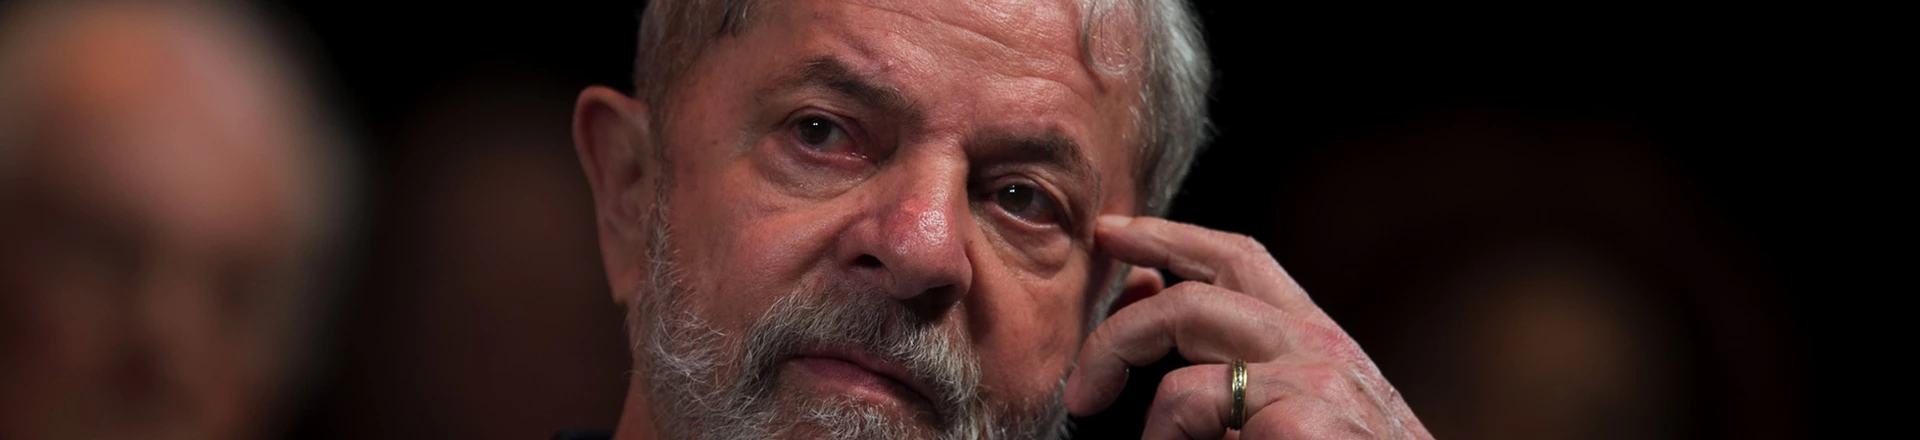 Negros, mulheres e trans puxaram votos para a esquerda em 2020, mas ficam de fora de articulações de Lula